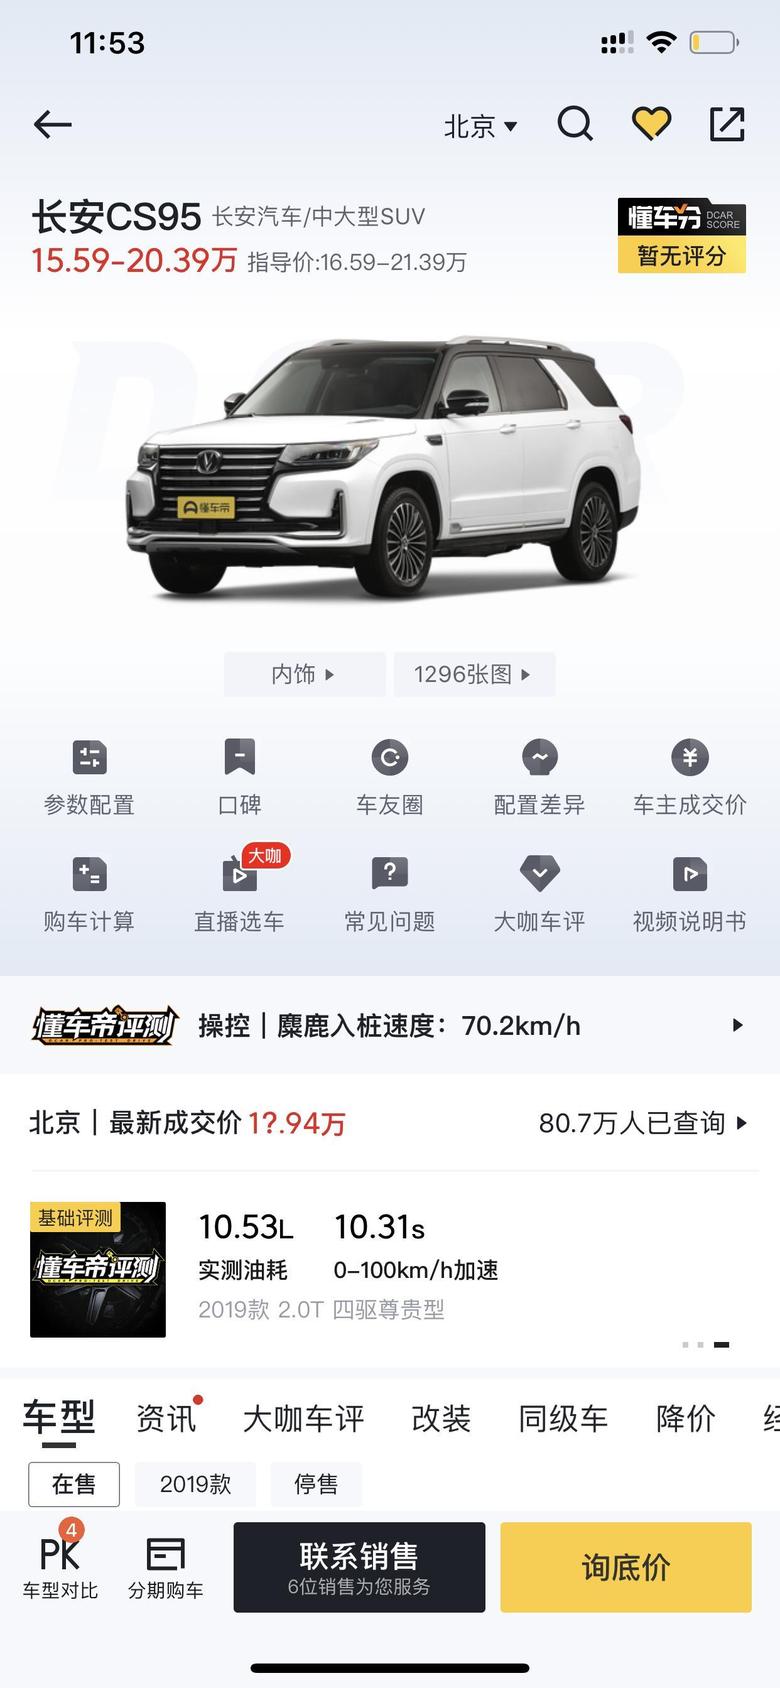 长安cs95 目前想入手两驱豪华版，不知道北京裸车最低能到多少。之前有销售给我报过现金优惠两万三，也就是152900裸车，不知道是不是最低